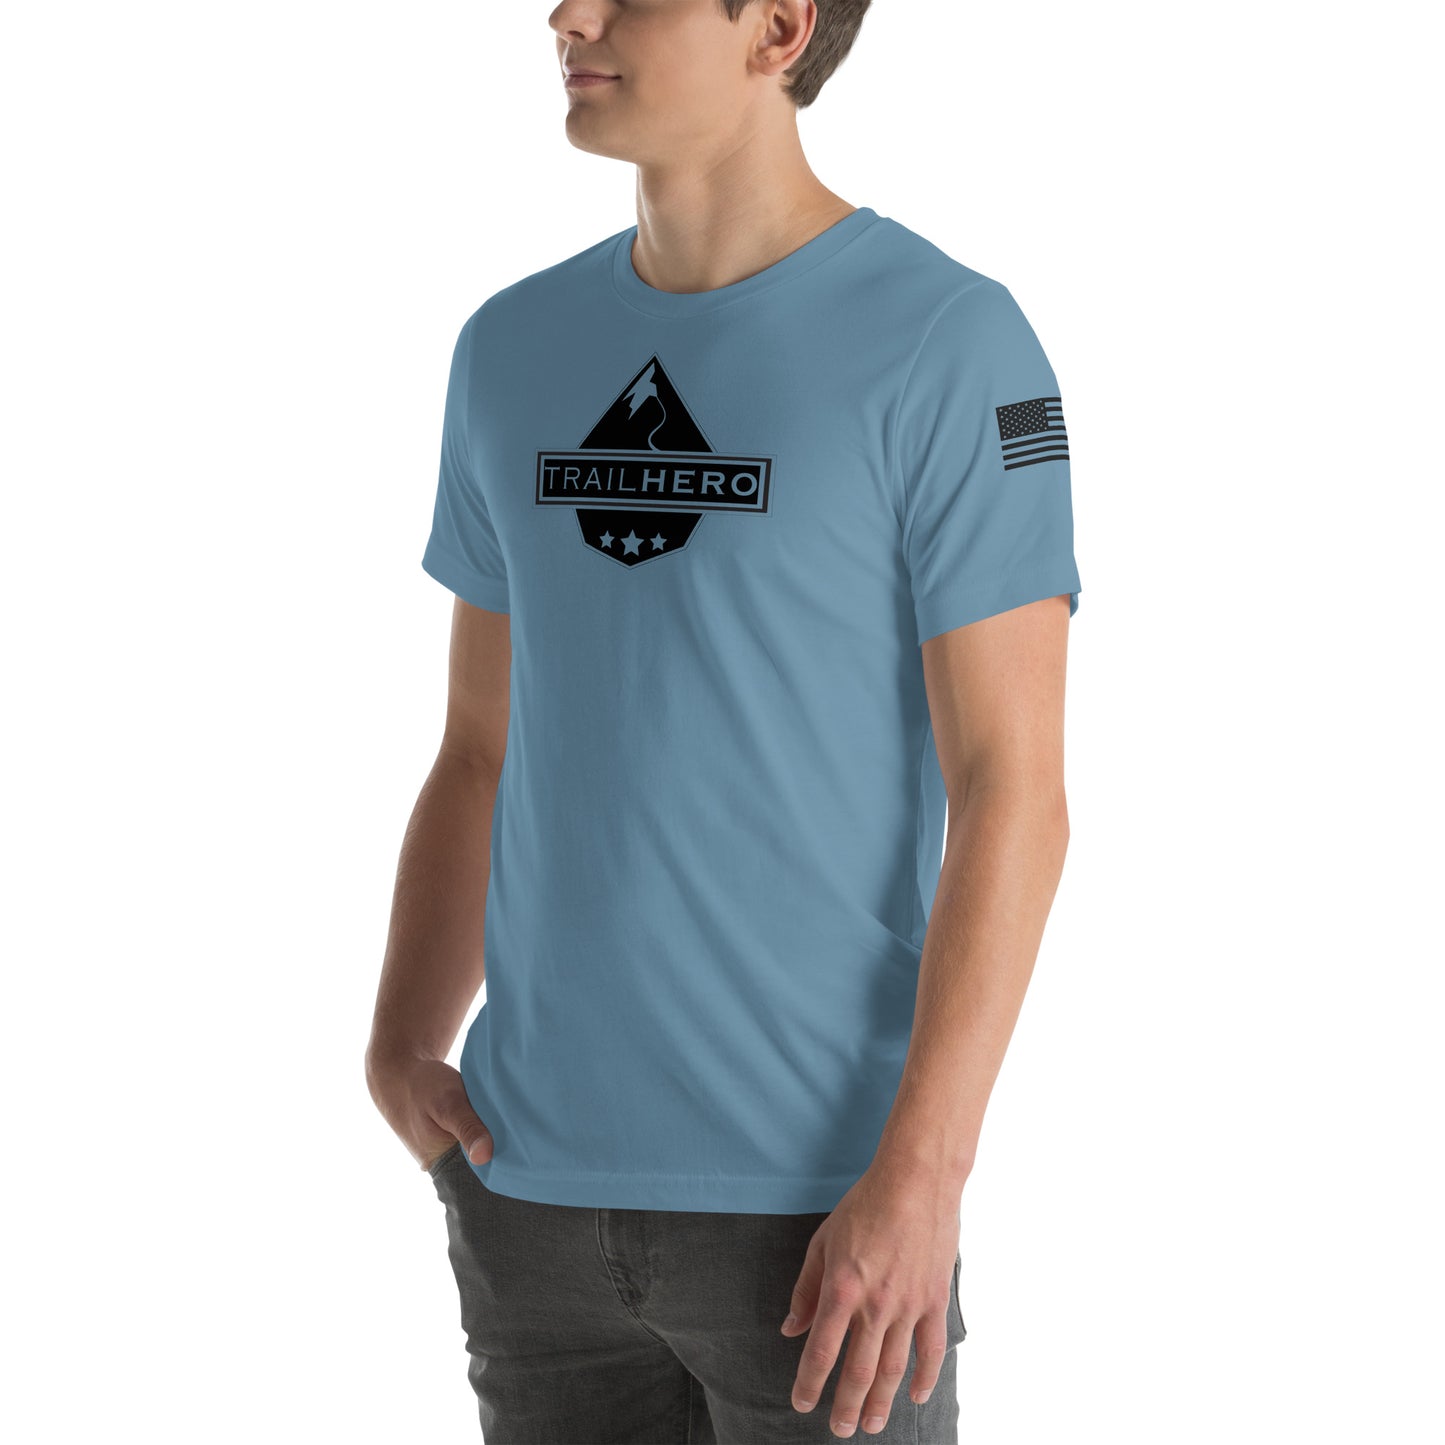 Trail Hero - Unisex - Pre-Shrunk 100% Cotton Flag T-shirt - 7 Colors